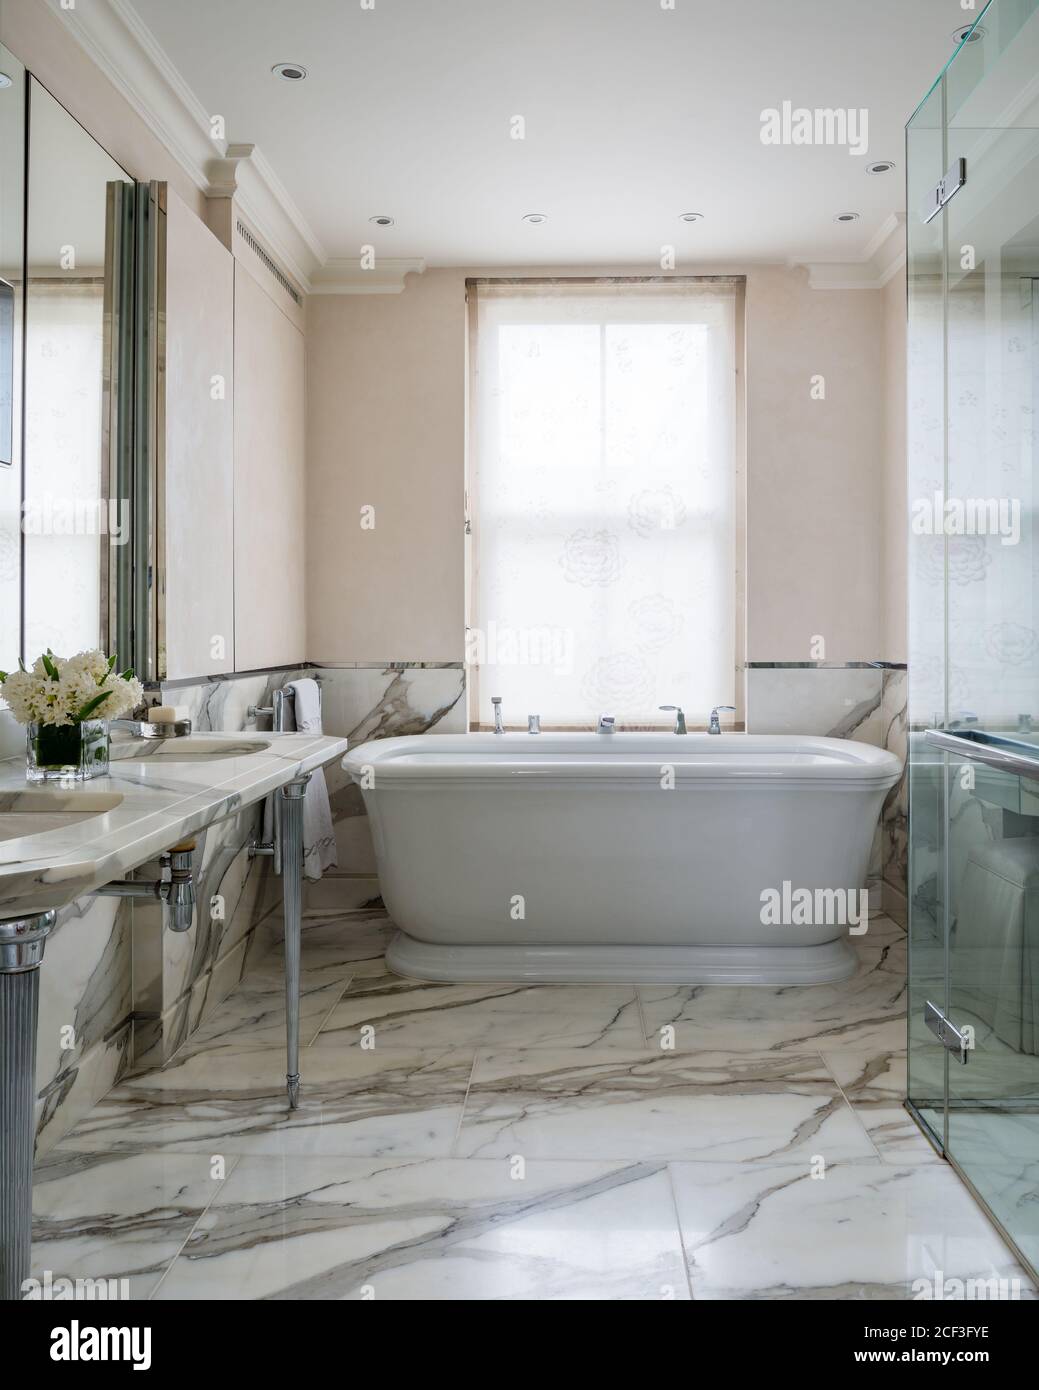 Baignoire en marbre salle de bains de style classique Banque D'Images